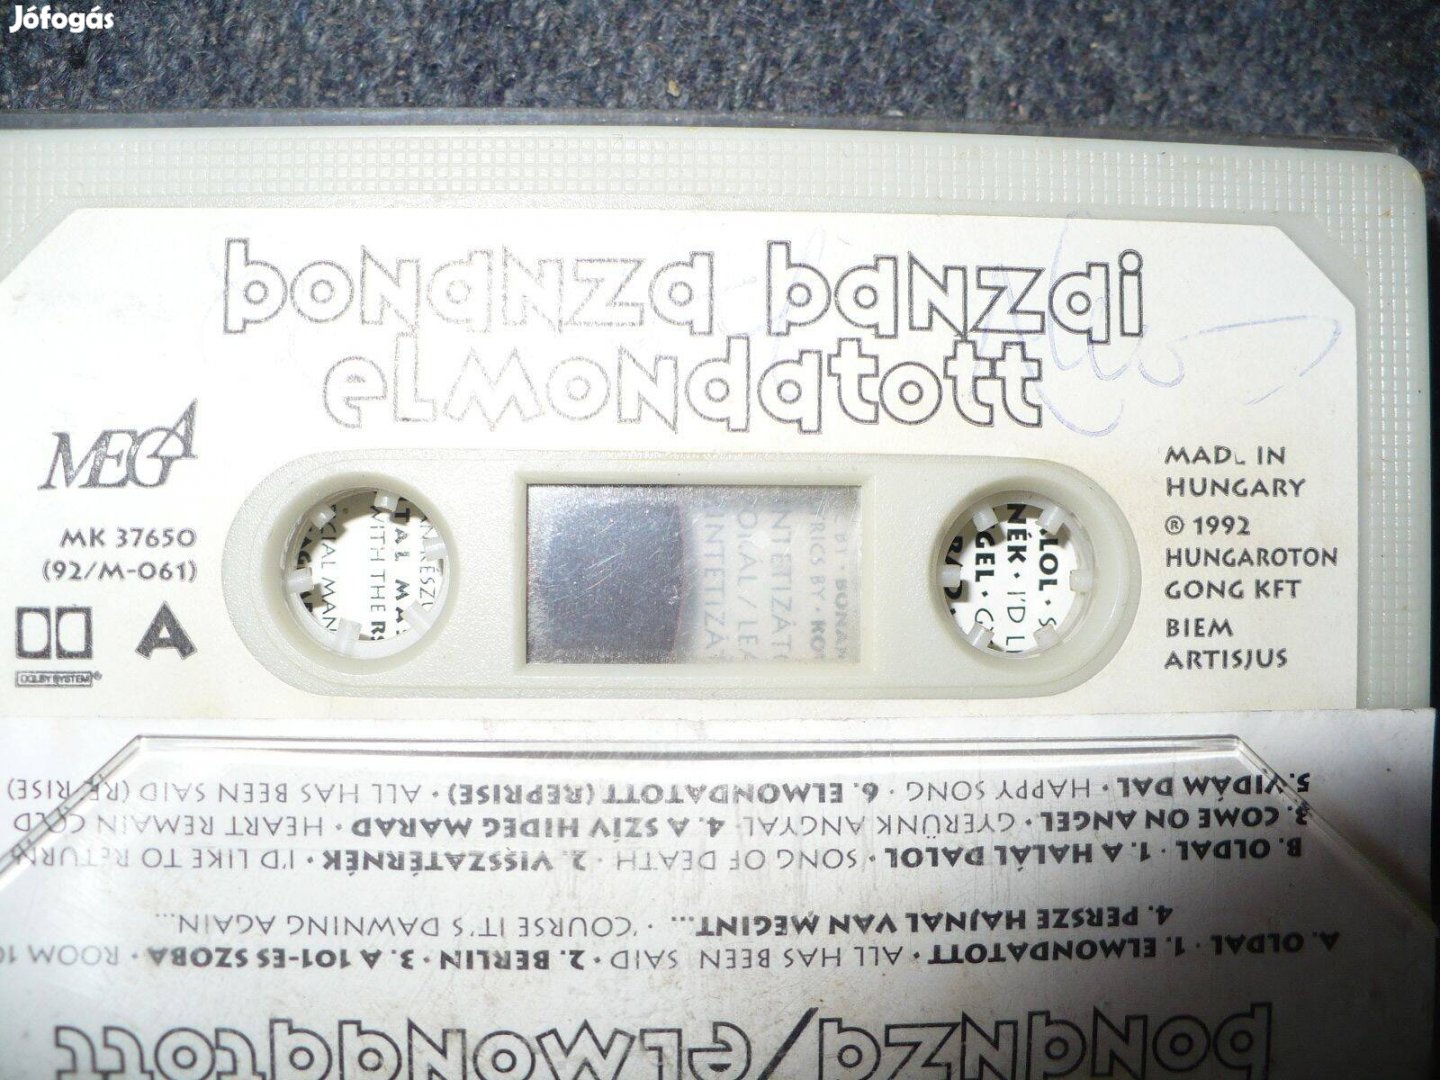 Bonanza Banzai: Elmondatott (dedikált kazetta, Kovács Ákos)